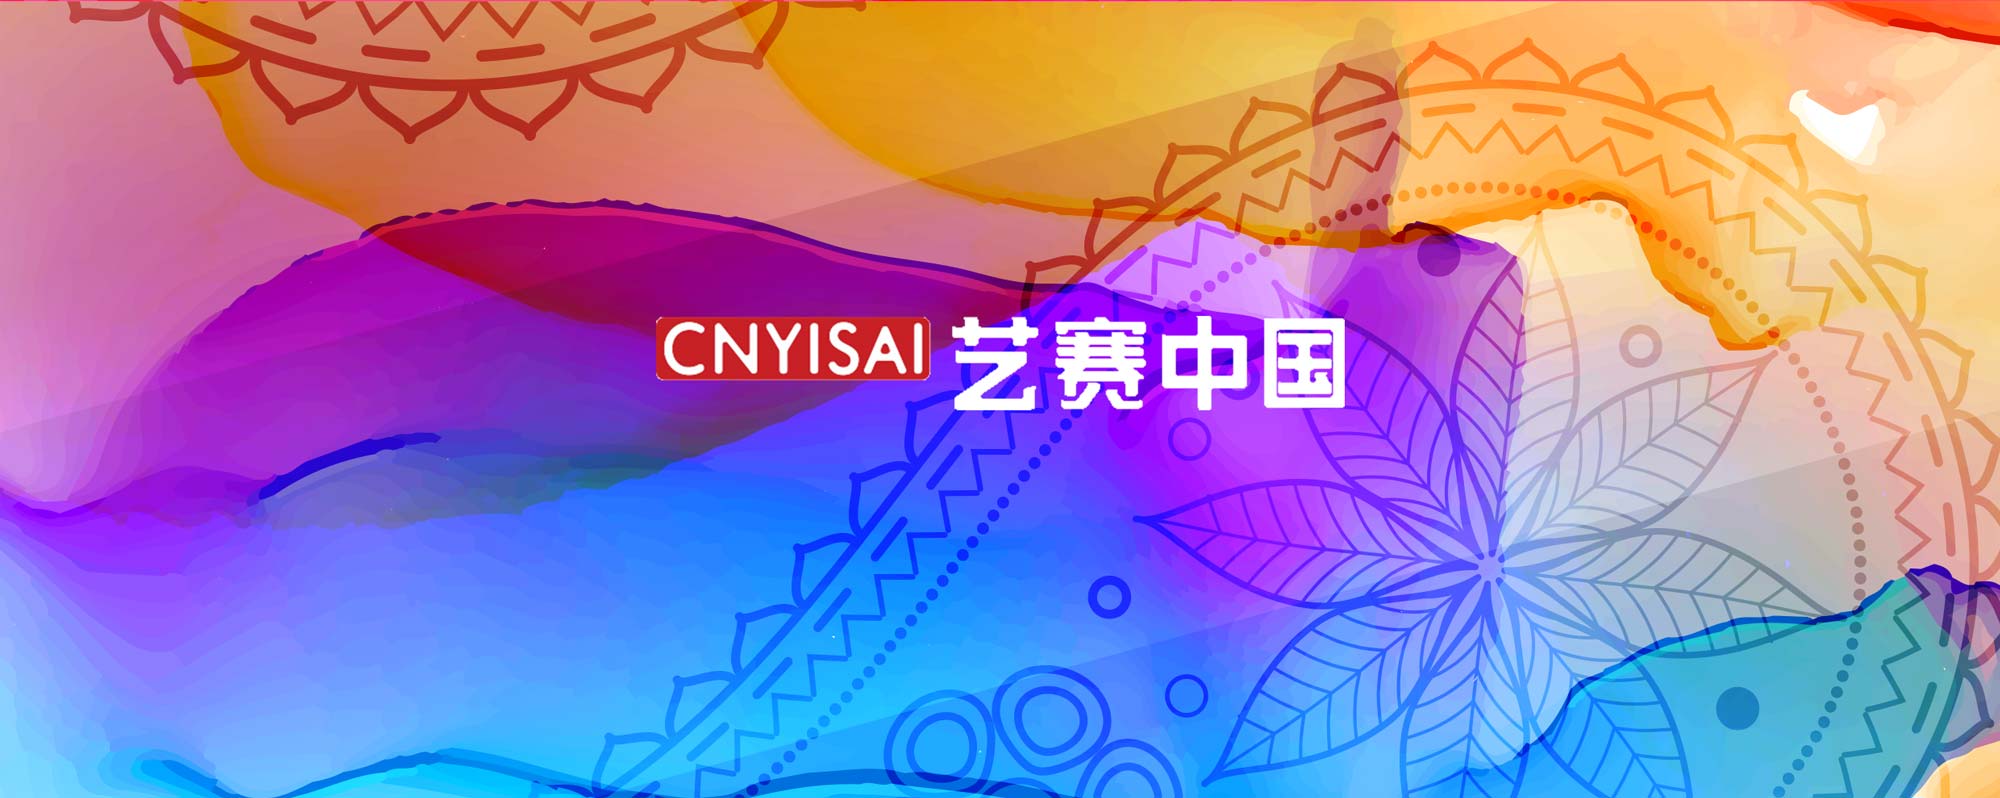 [获奖查询] 第三届香港当代设计奖（秋季赛）-CNYISAI艺赛